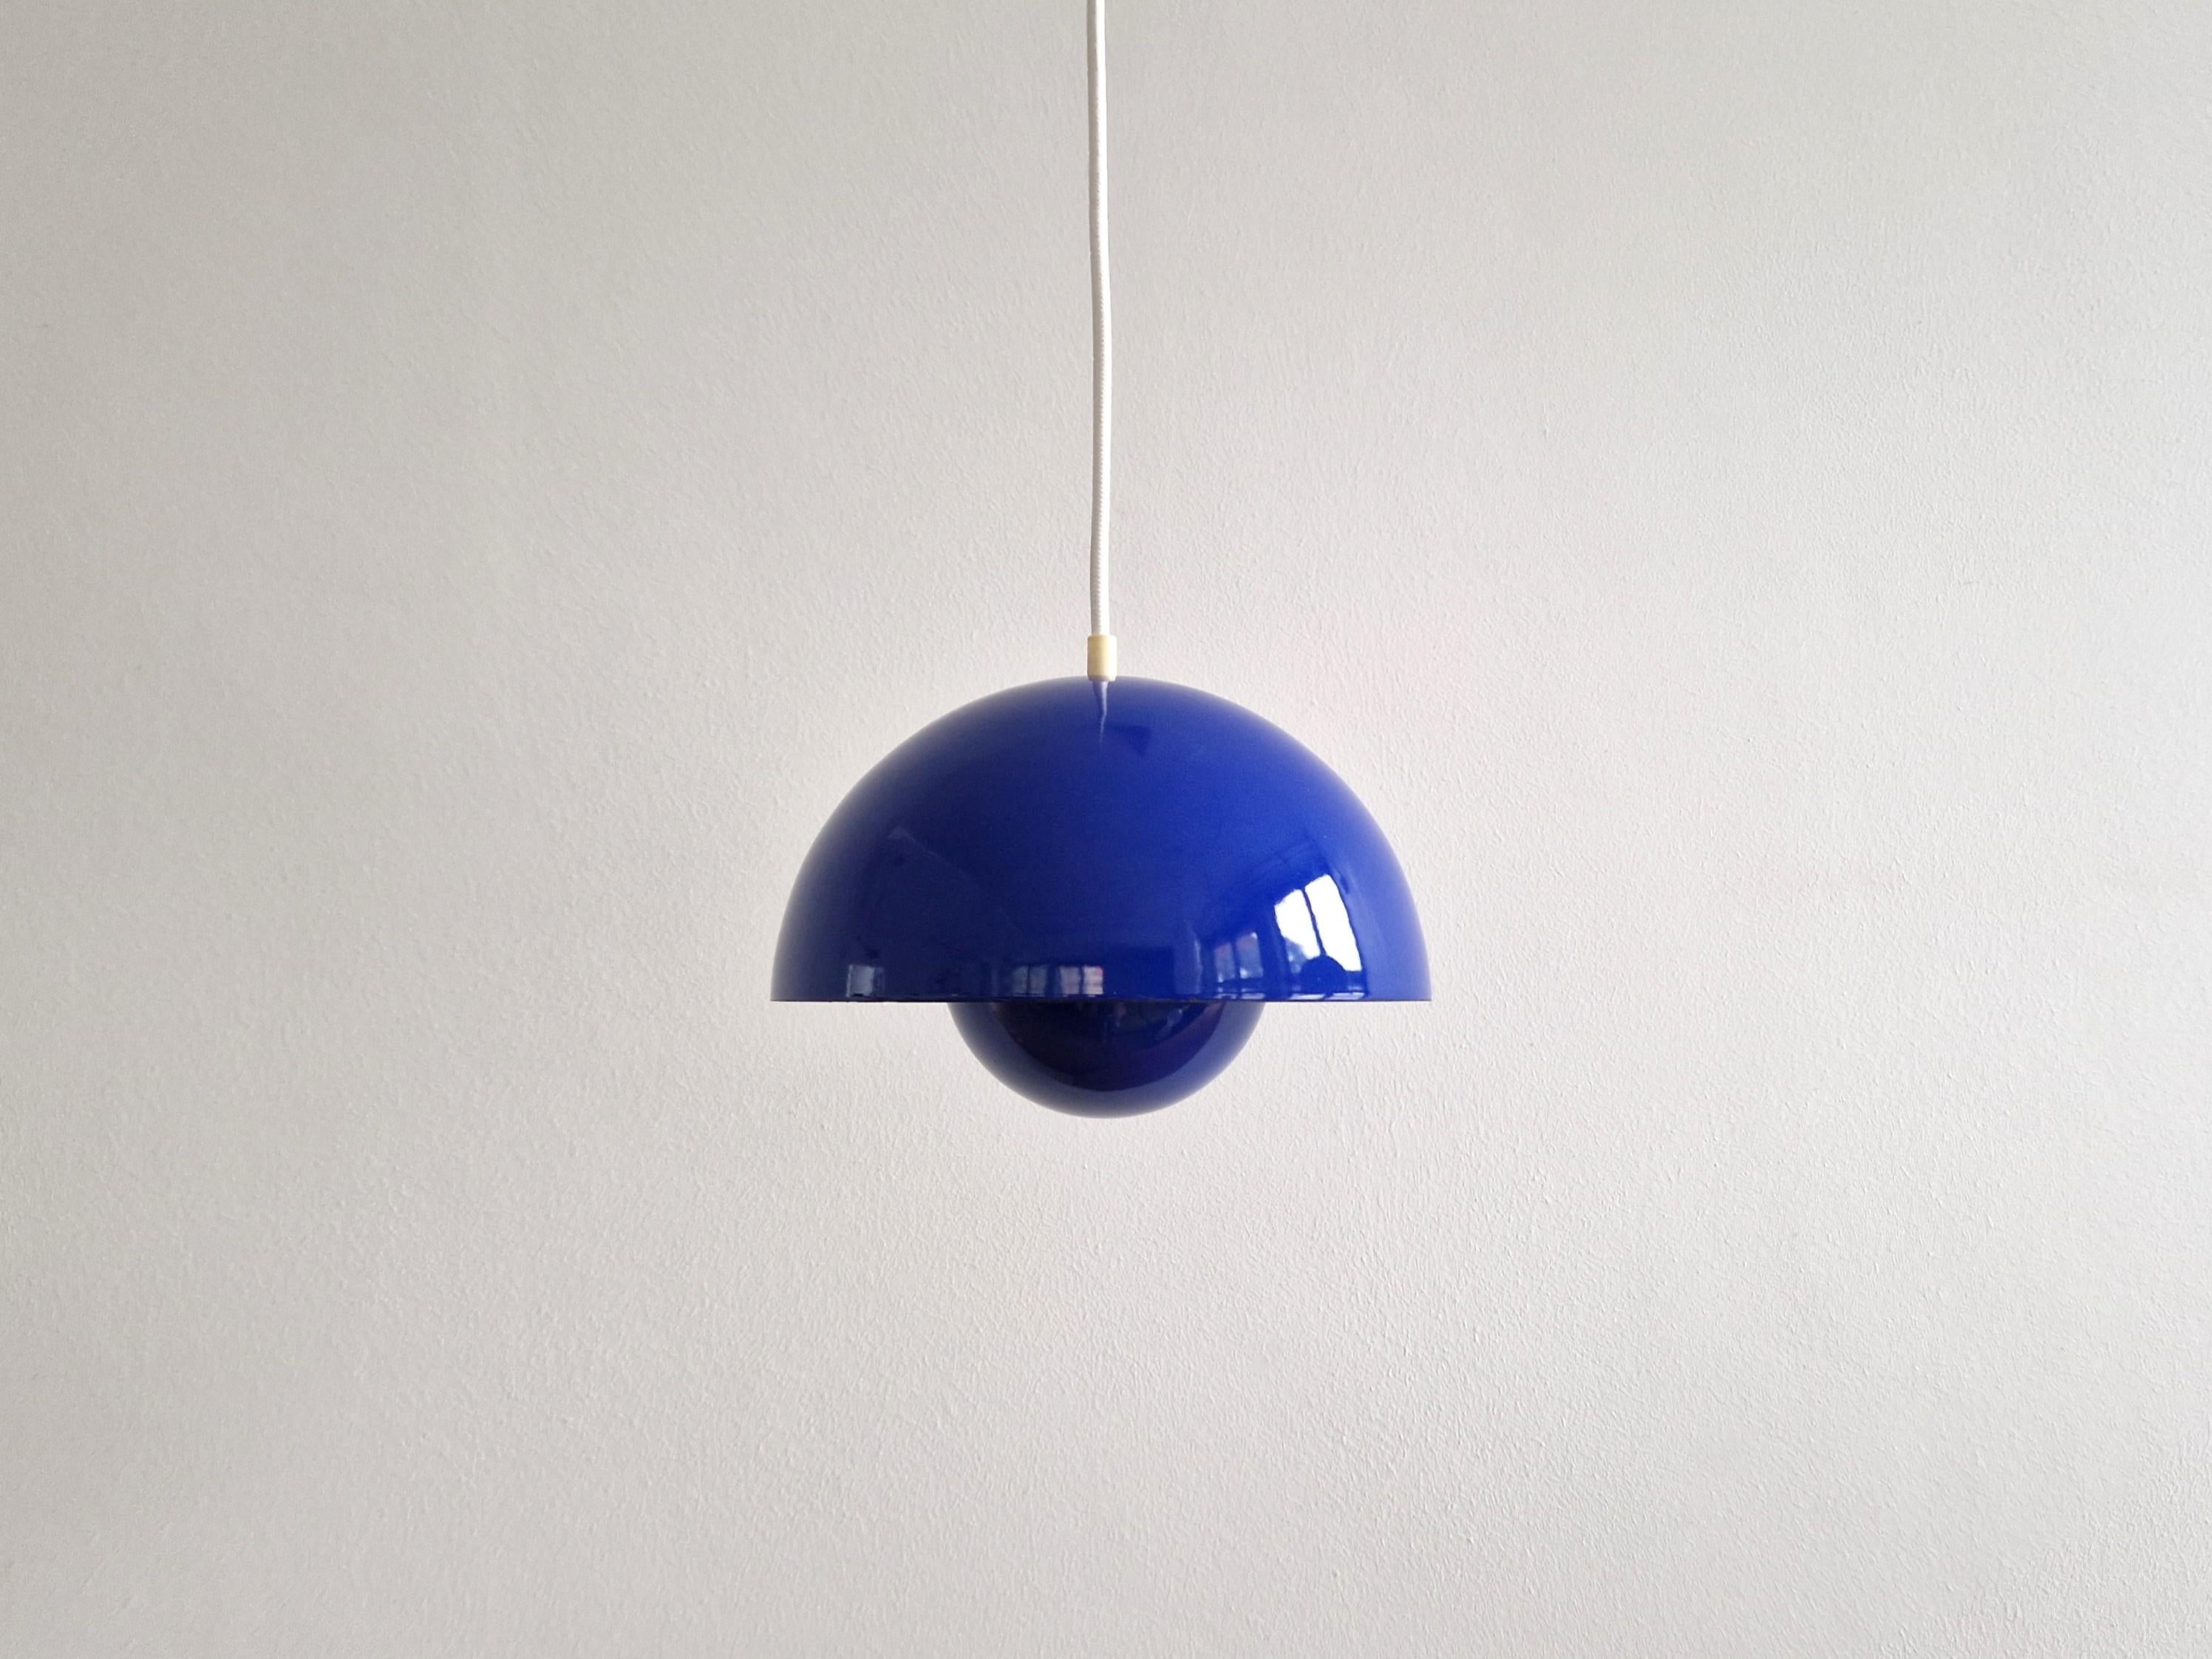 Die Flowerpot Pendelleuchte wurde 1968 von Verner Panton für Louis Poulsen entworfen. Ein schöner Designklassiker, der immer noch produziert wird. Diese Lampe ist eine frühe Version und hat eine blaue Emaillierung außen und eine weiße Innenseite.